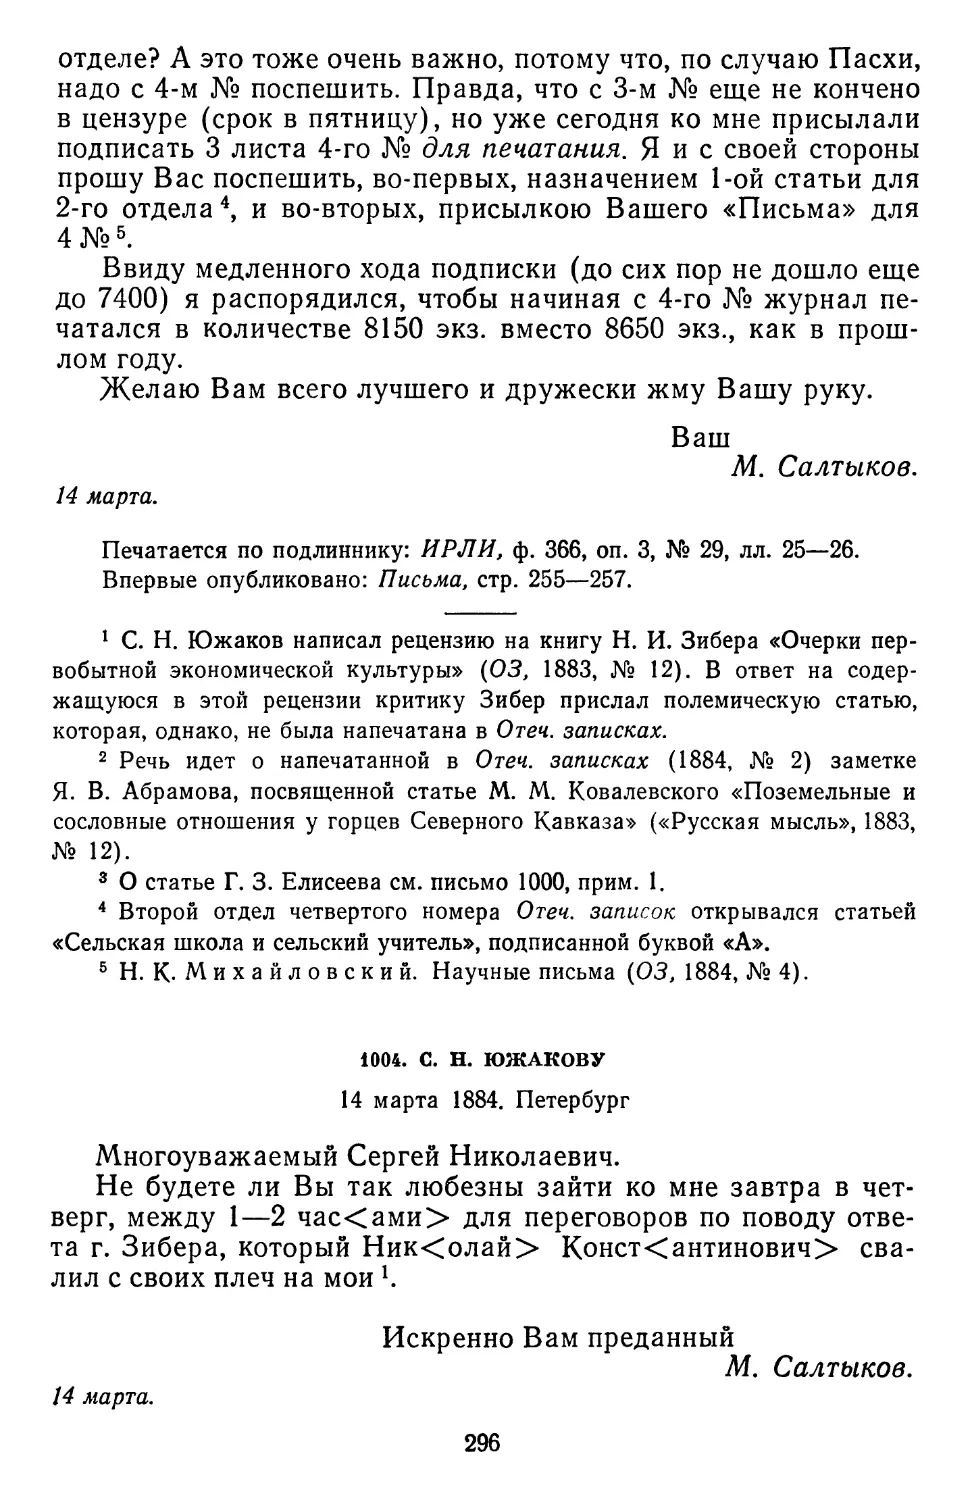 1004.С. Н. Южакову. 14 марта 1884. Петербург